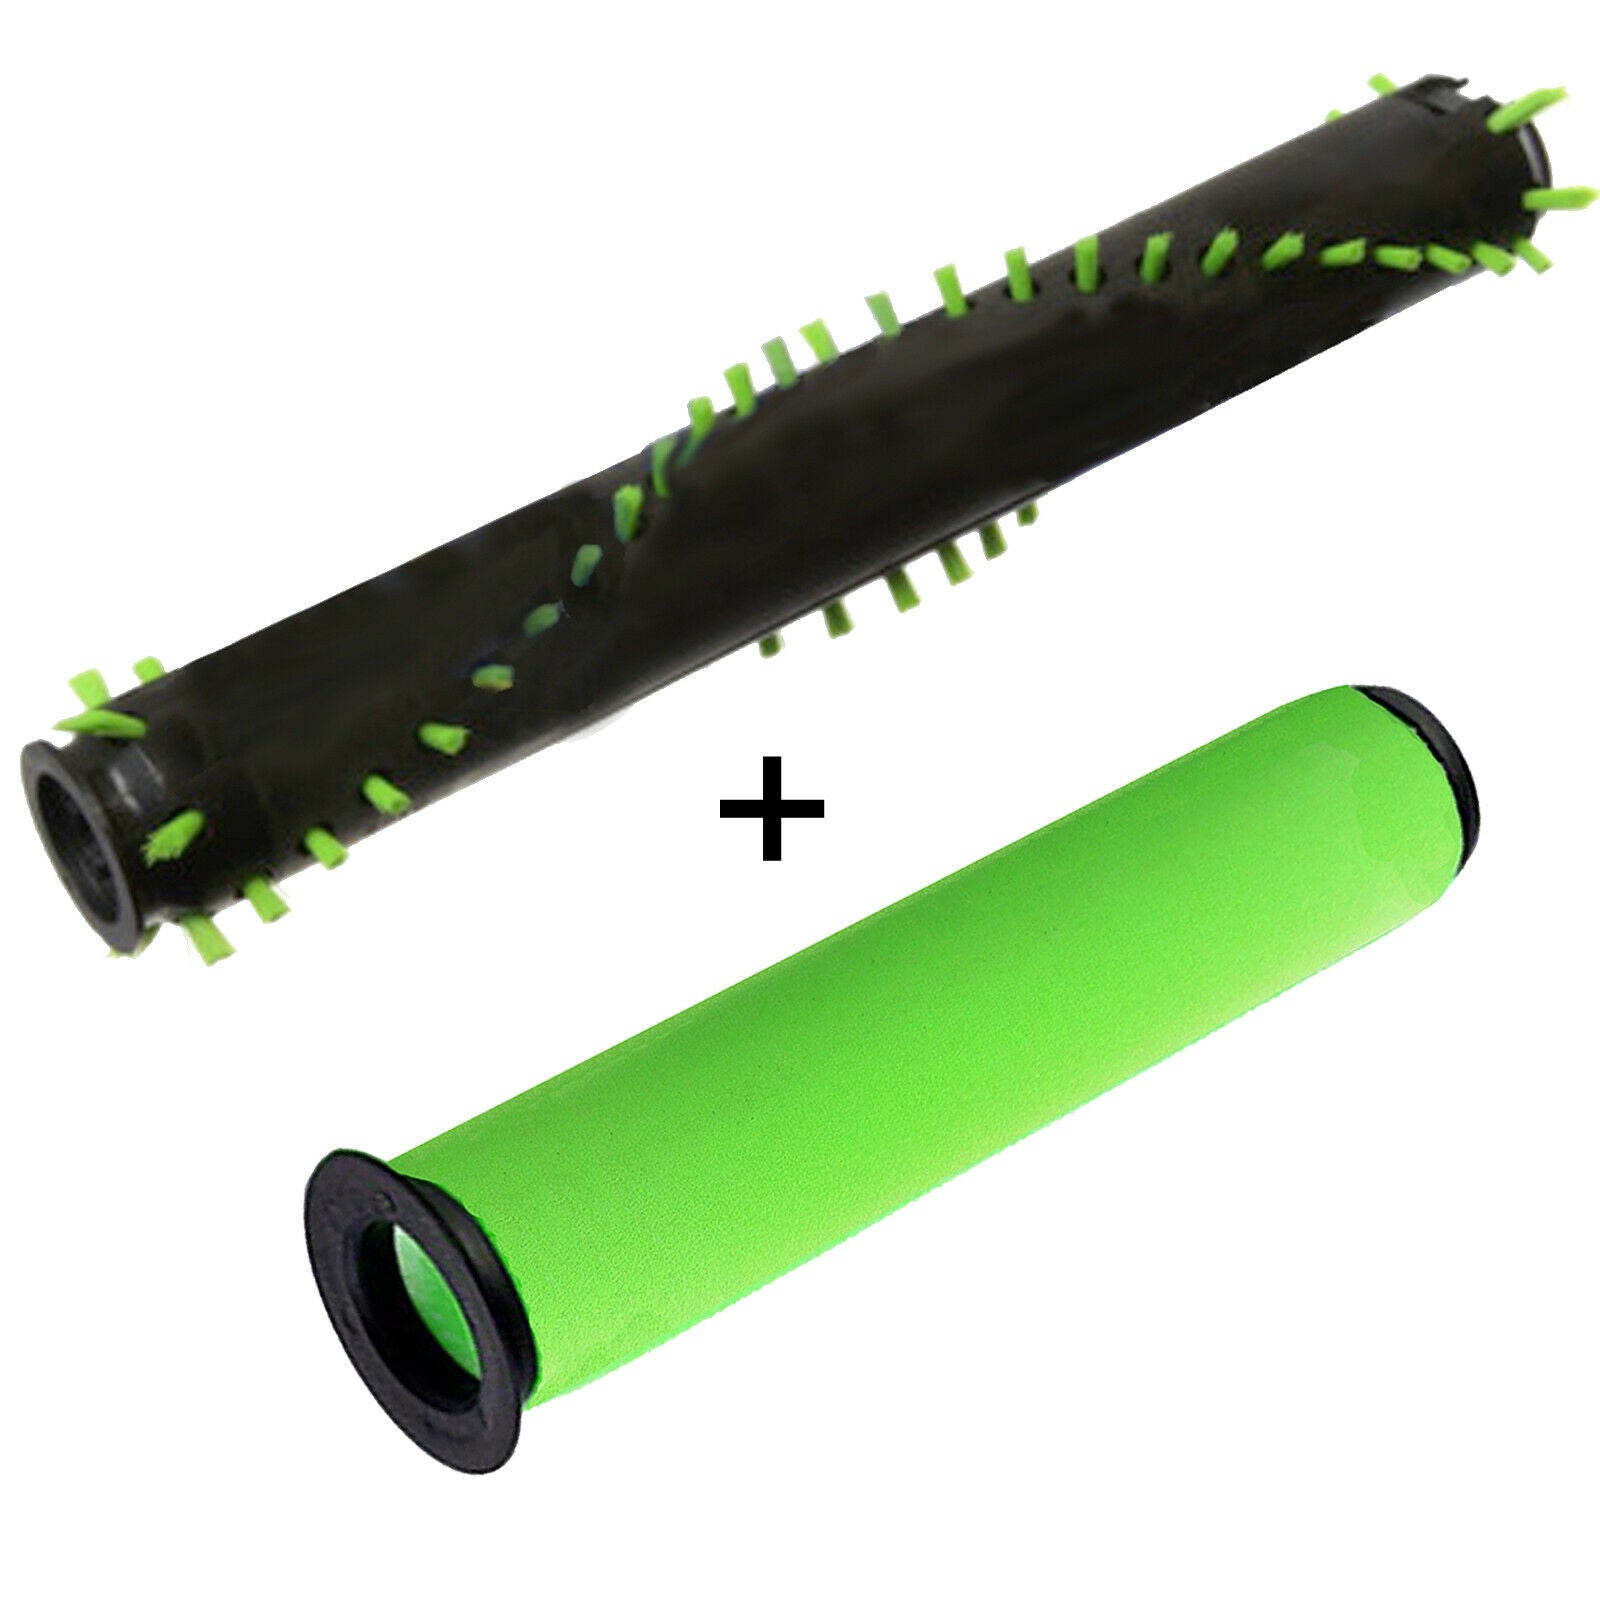 Brushroll + Washable Filter for GTECH AIRRAM MK2 K9 Cordless Vacuum Cleaner